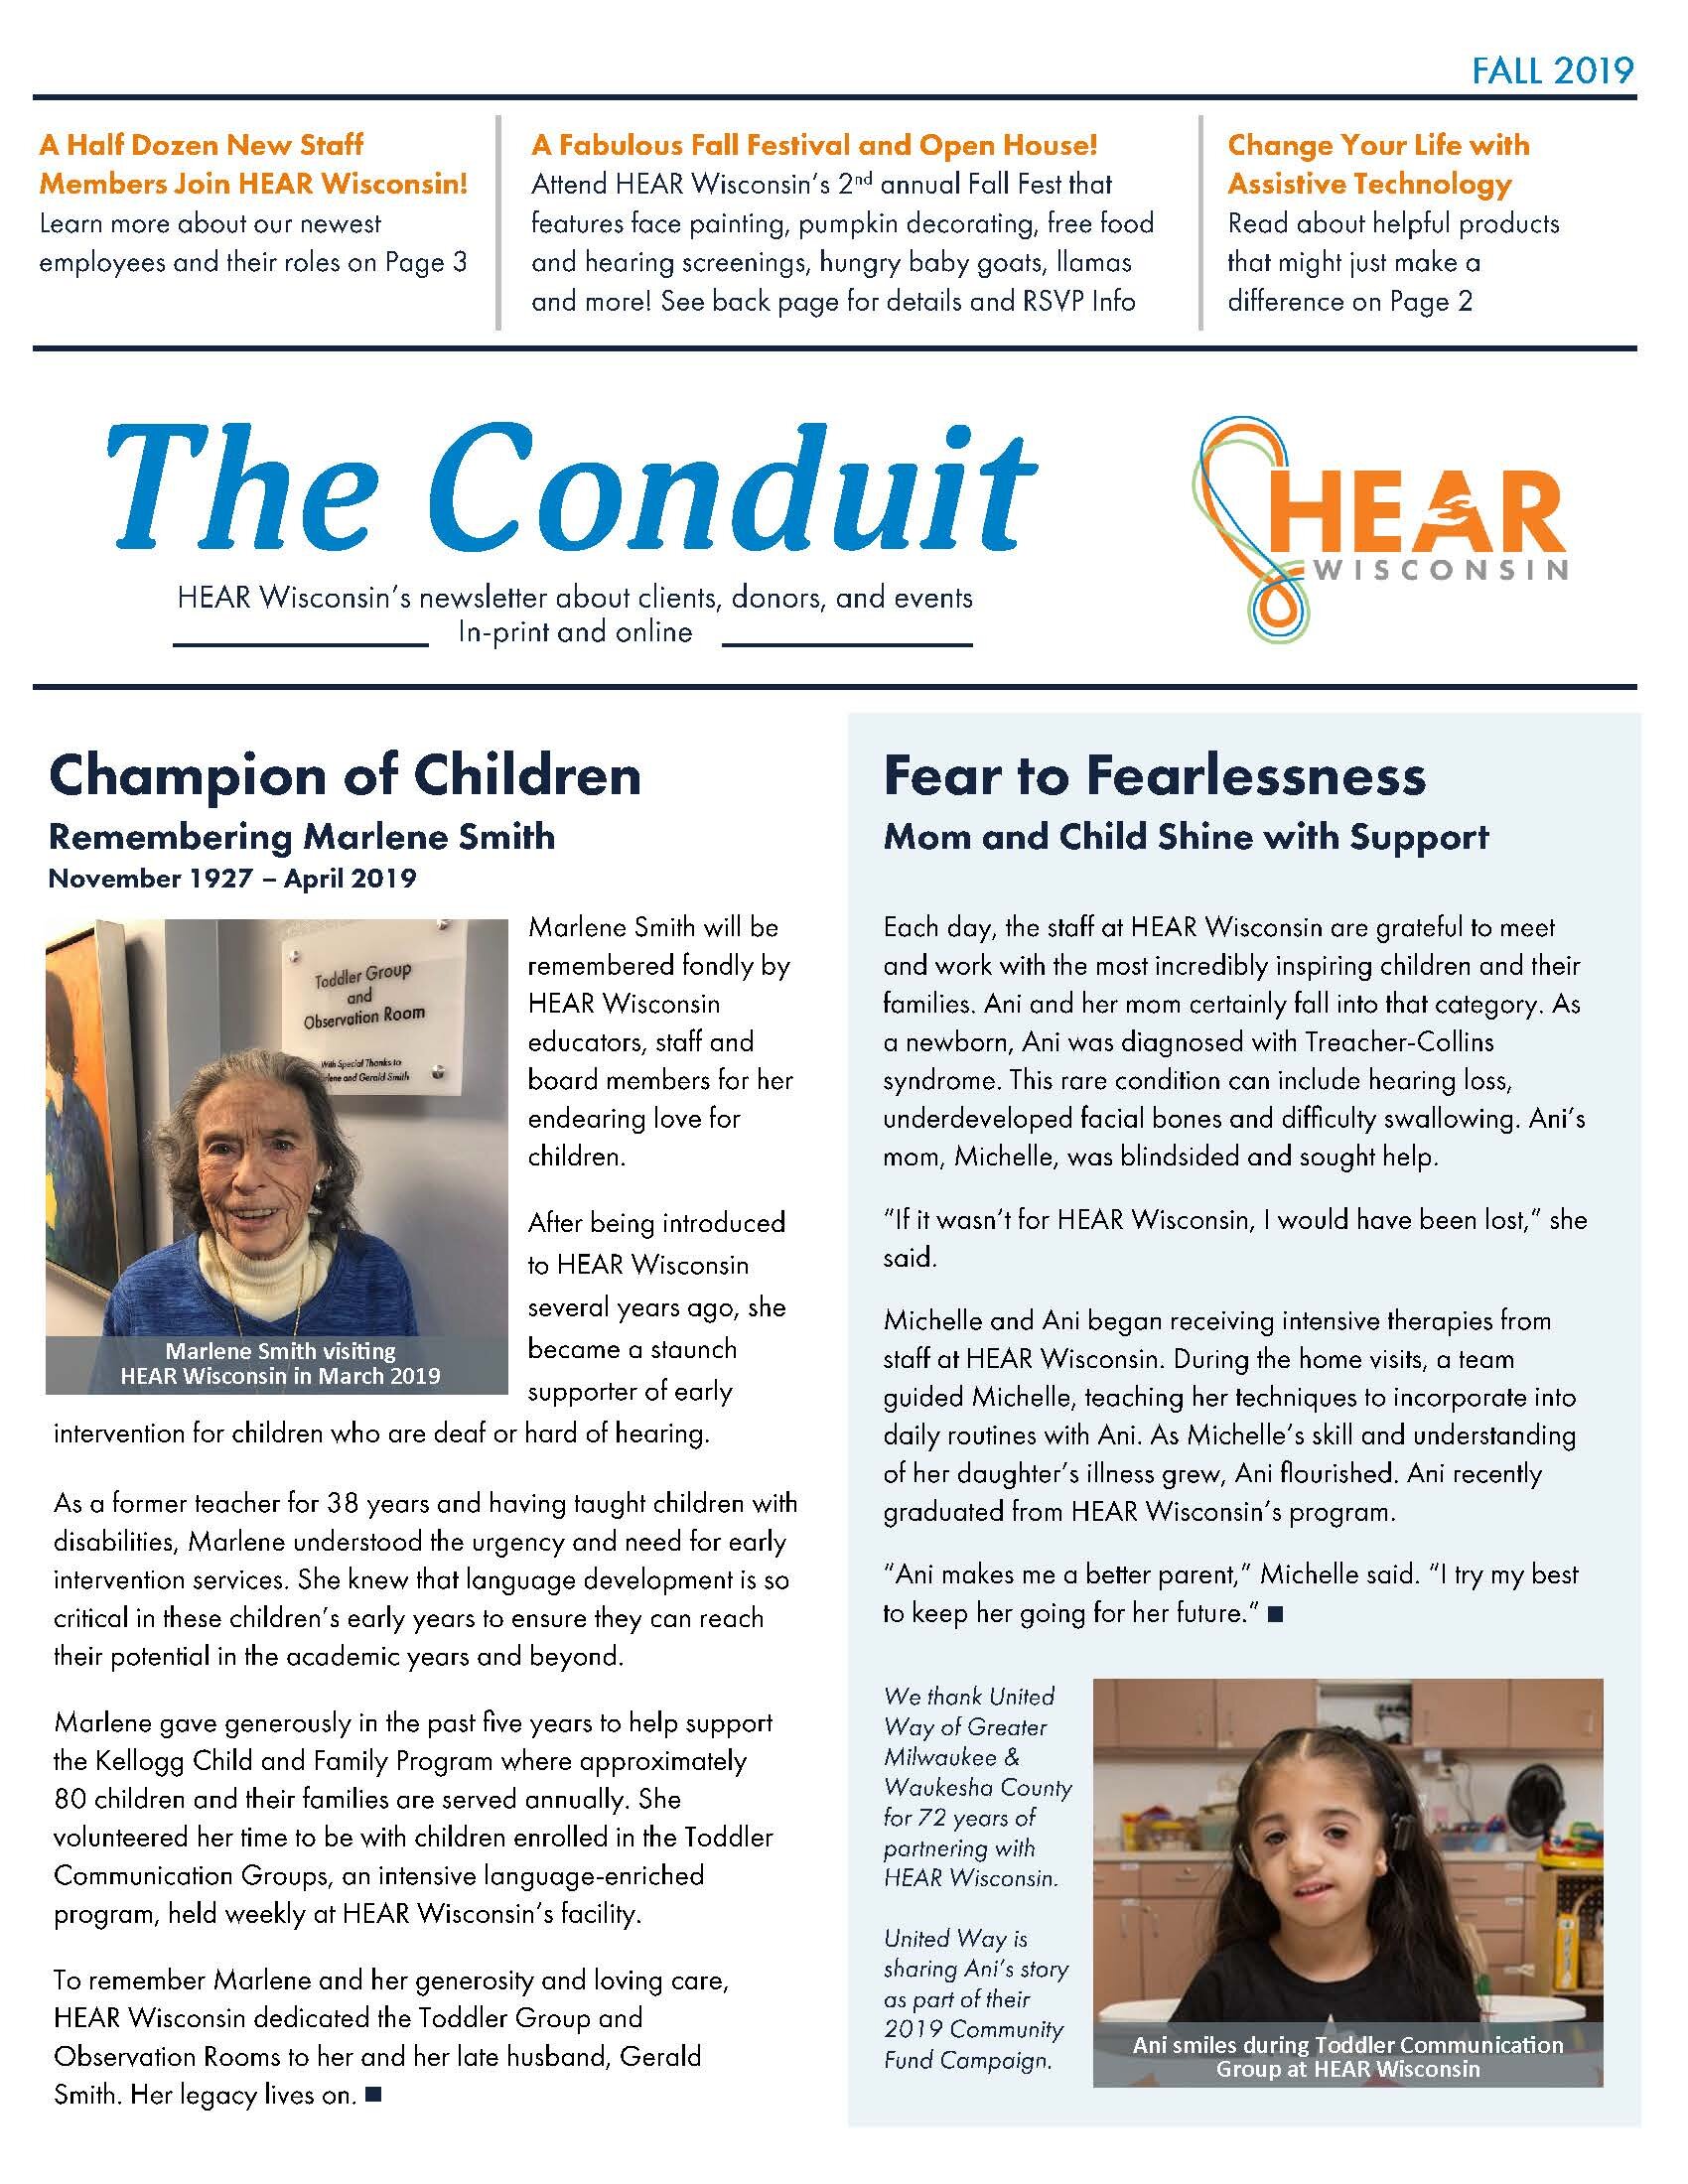 Conduit Newsletter - Fall 2019